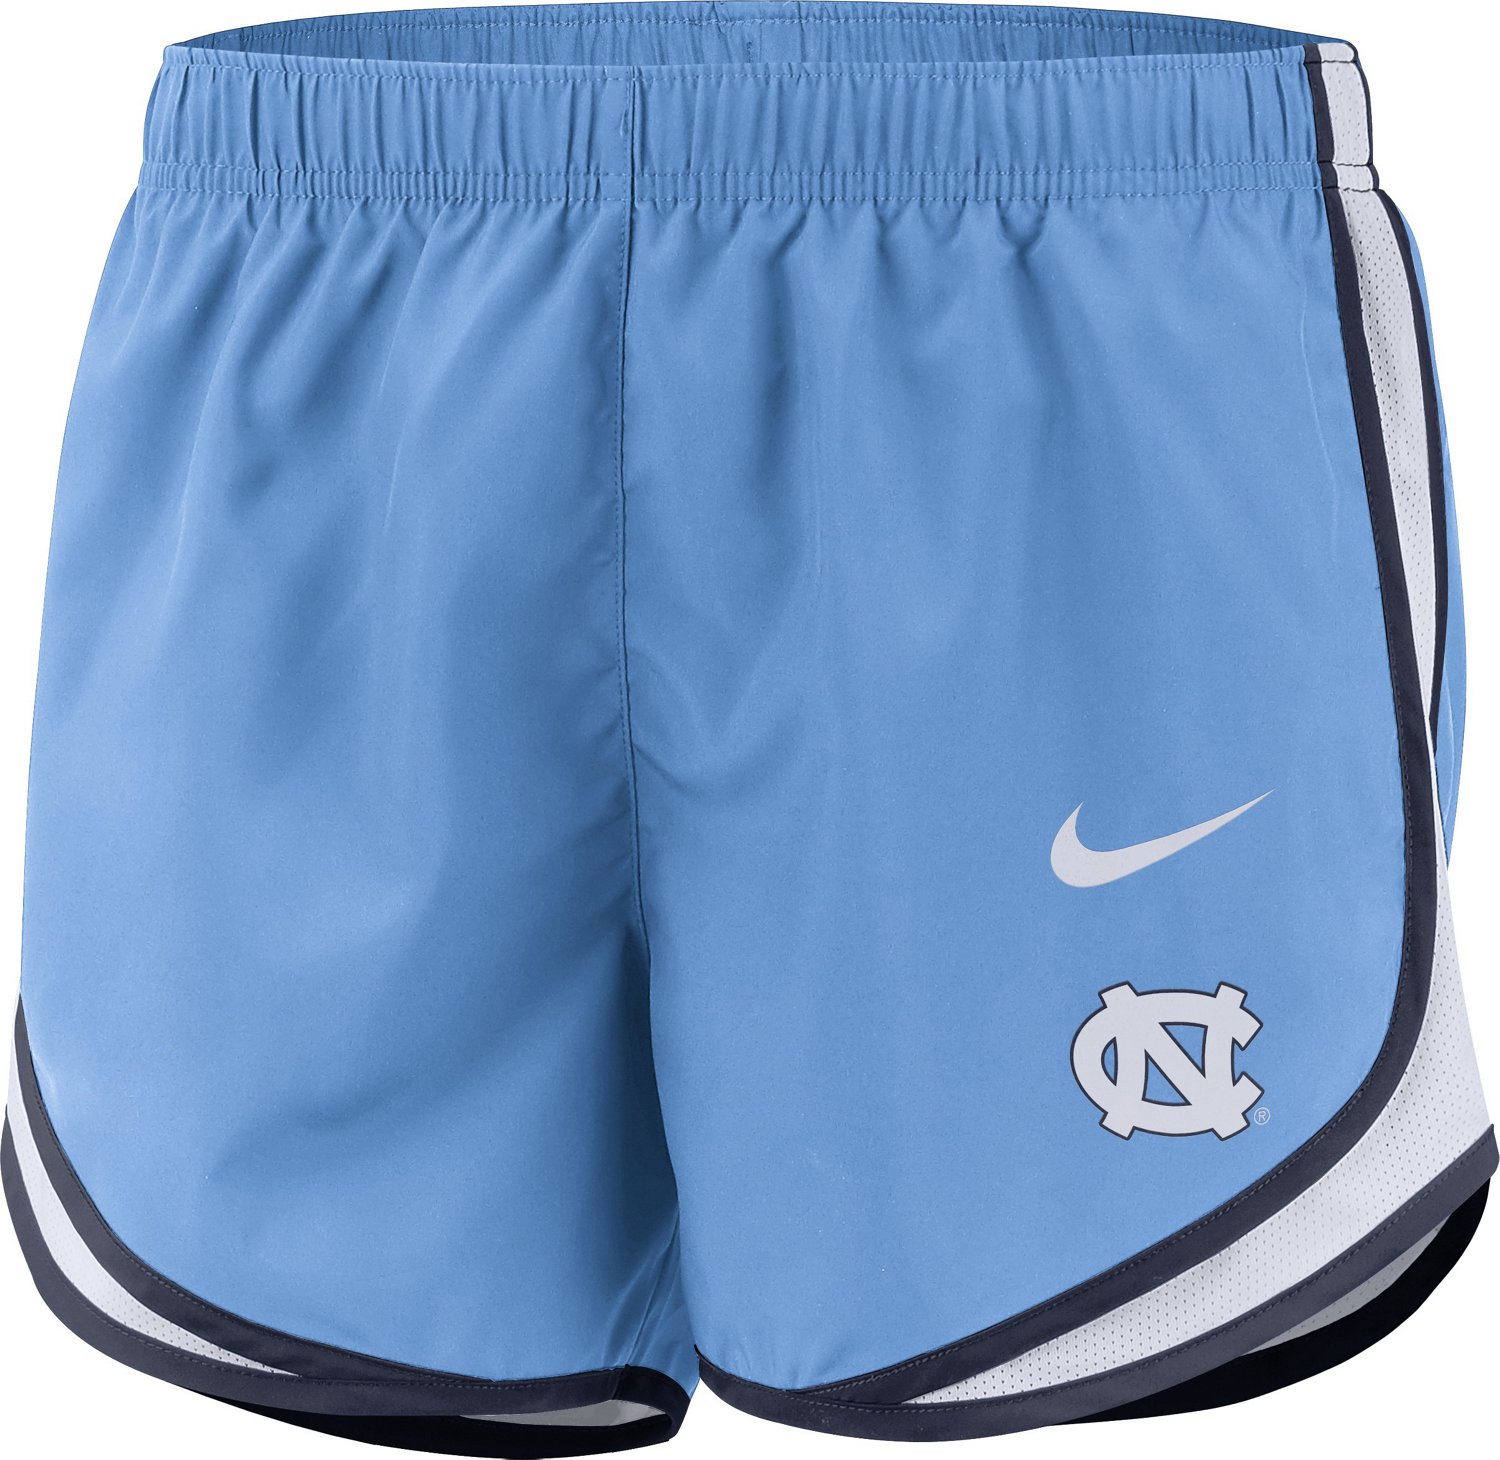 carolina blue nike shorts